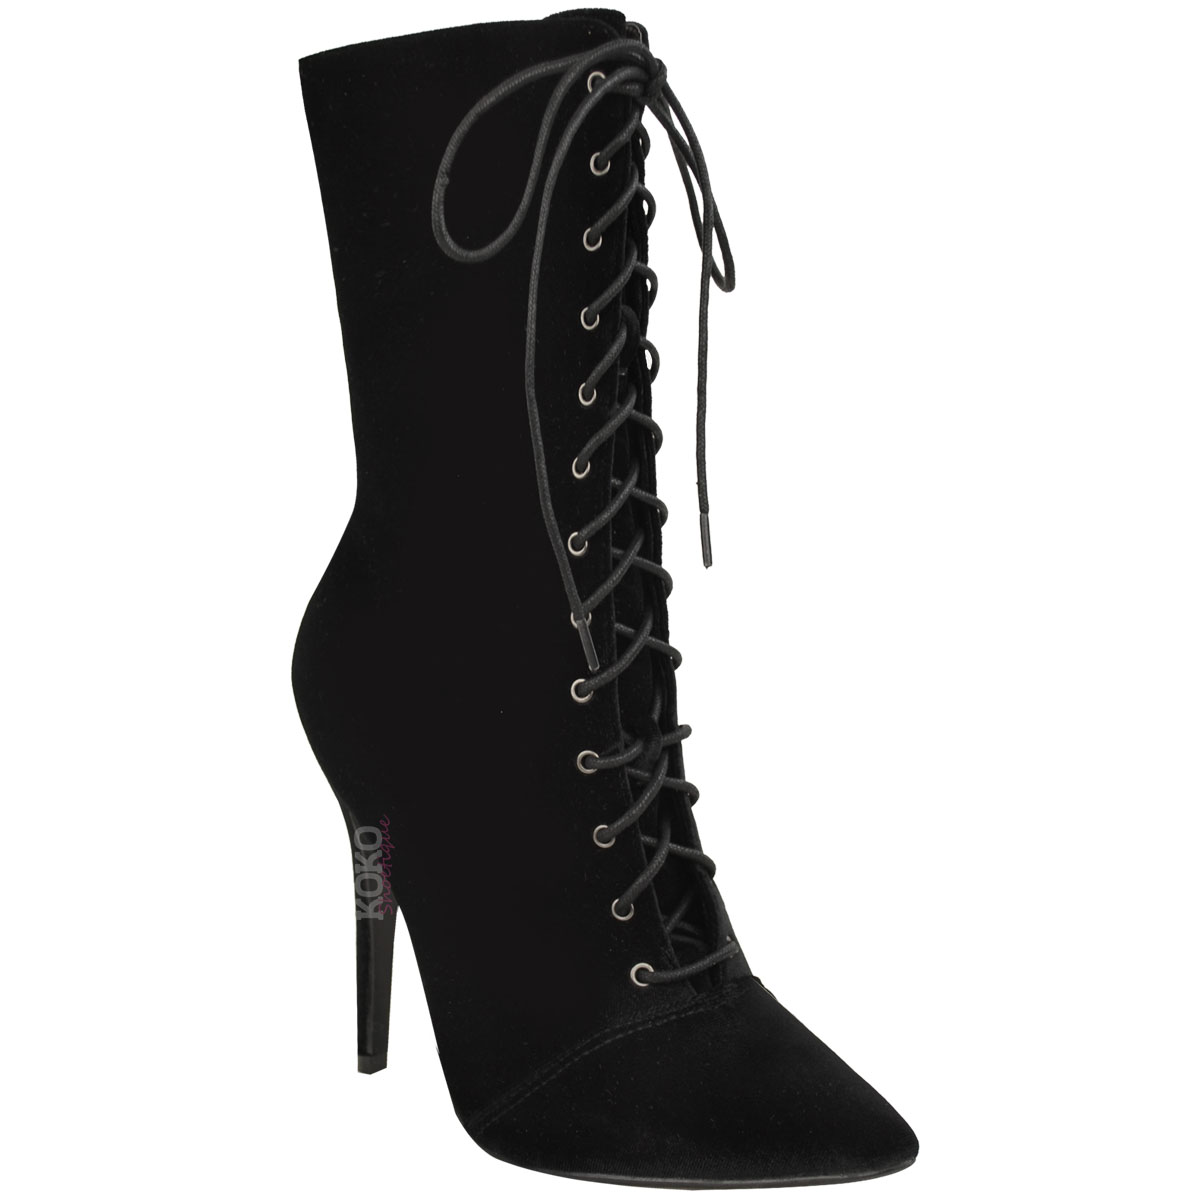 Buy > women's boots high heel > in stock